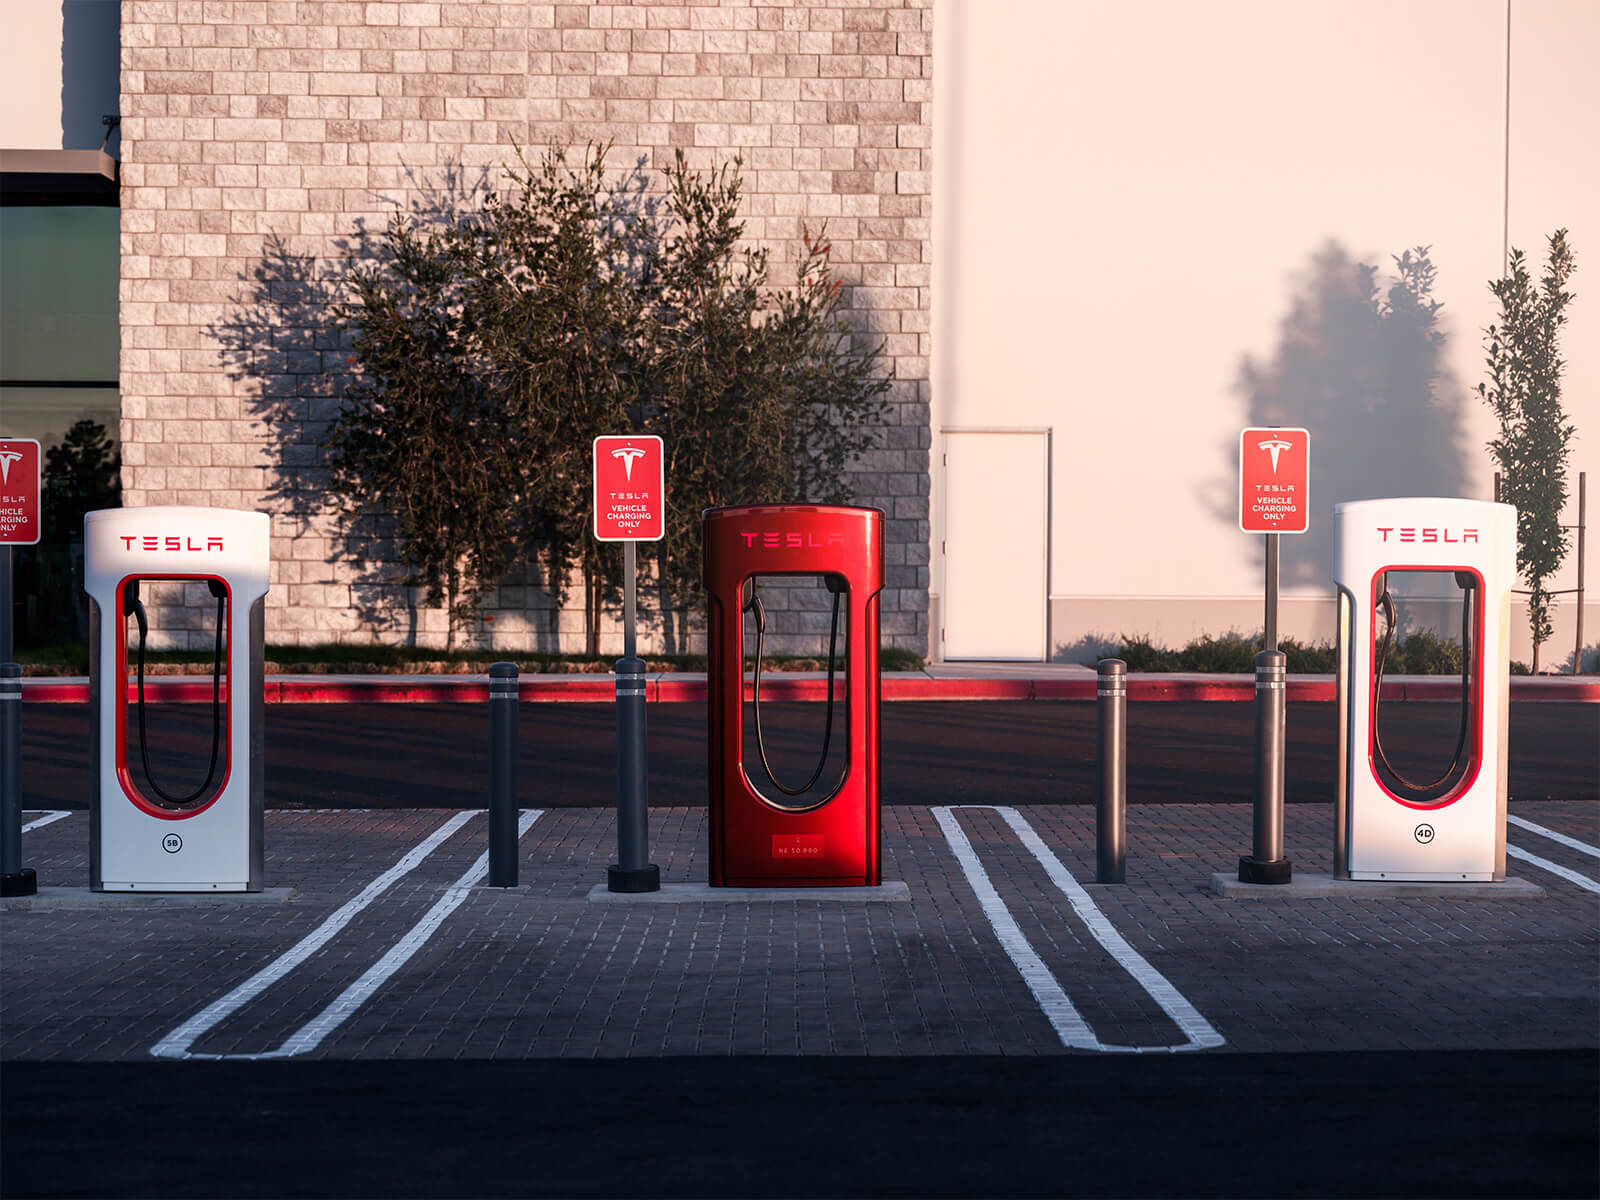 Tesla propose un transfert Superchargement gratuit et illimité pour les livraisons de fin d’année